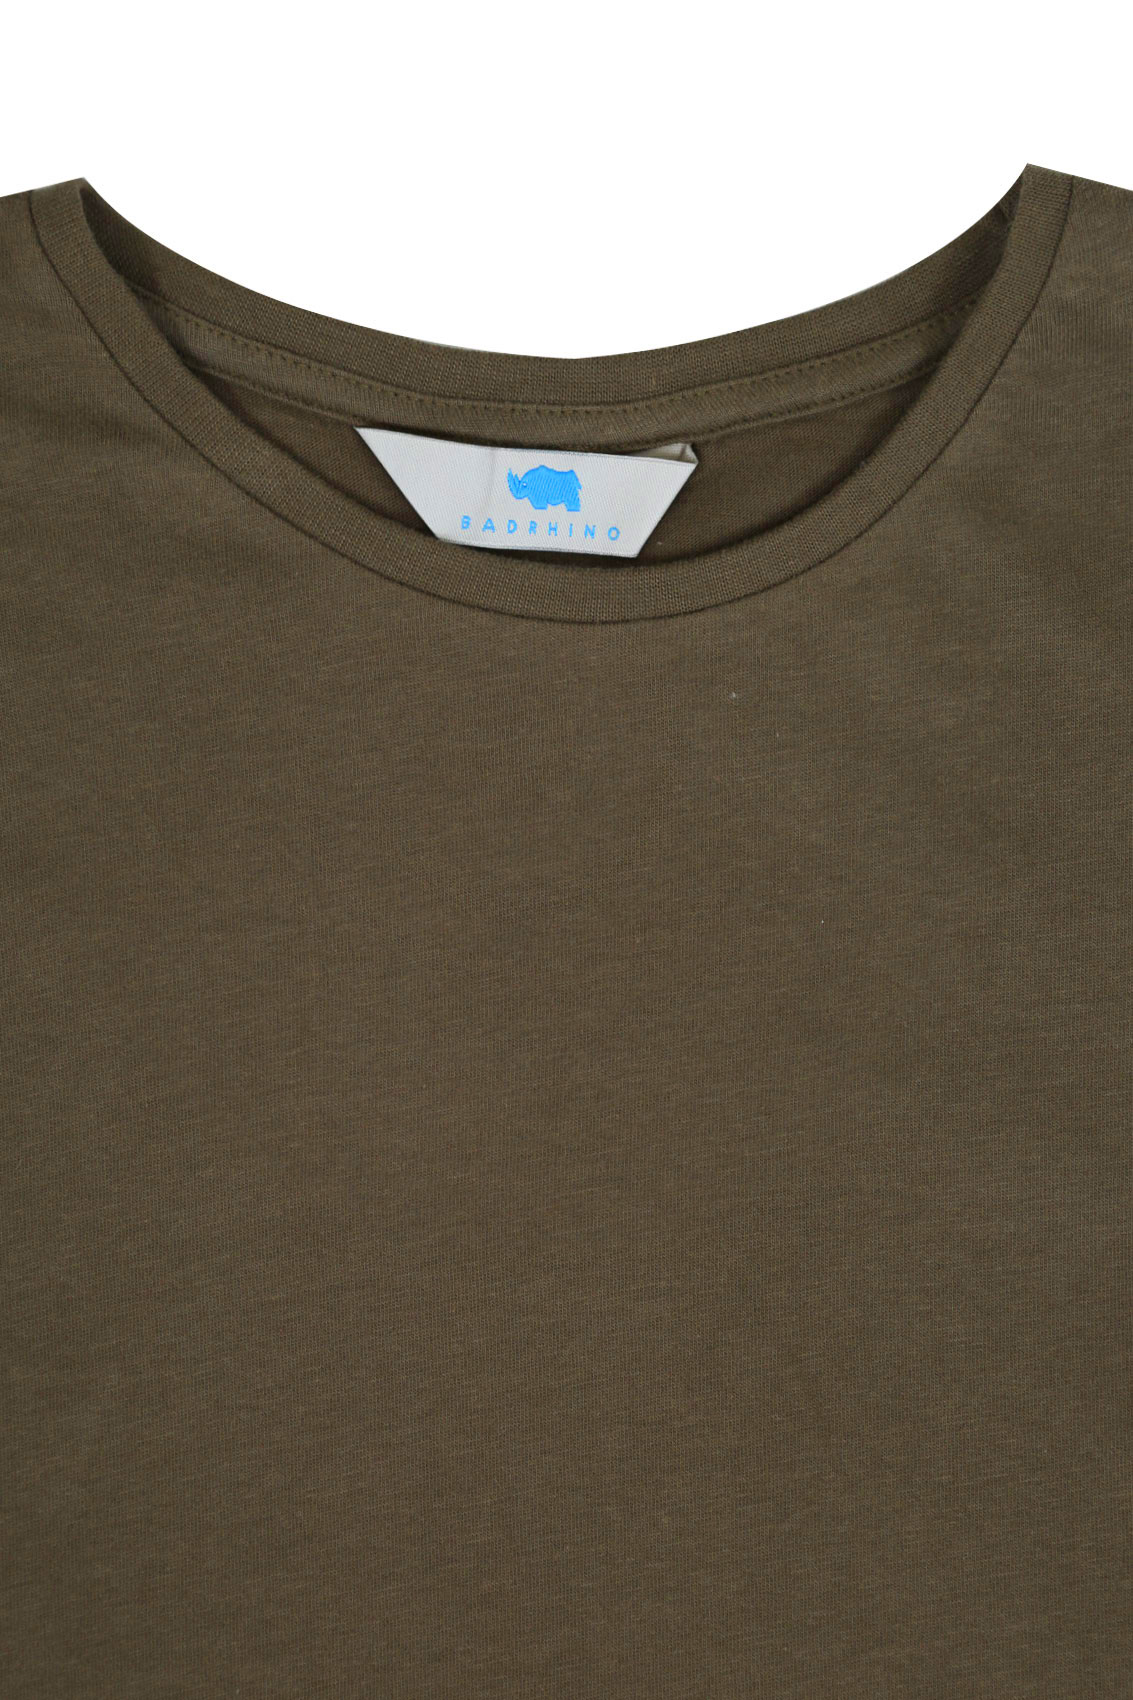 BadRhino Khaki Basic Plain Crew Neck T-Shirt - TALL Extra large sizes M ...